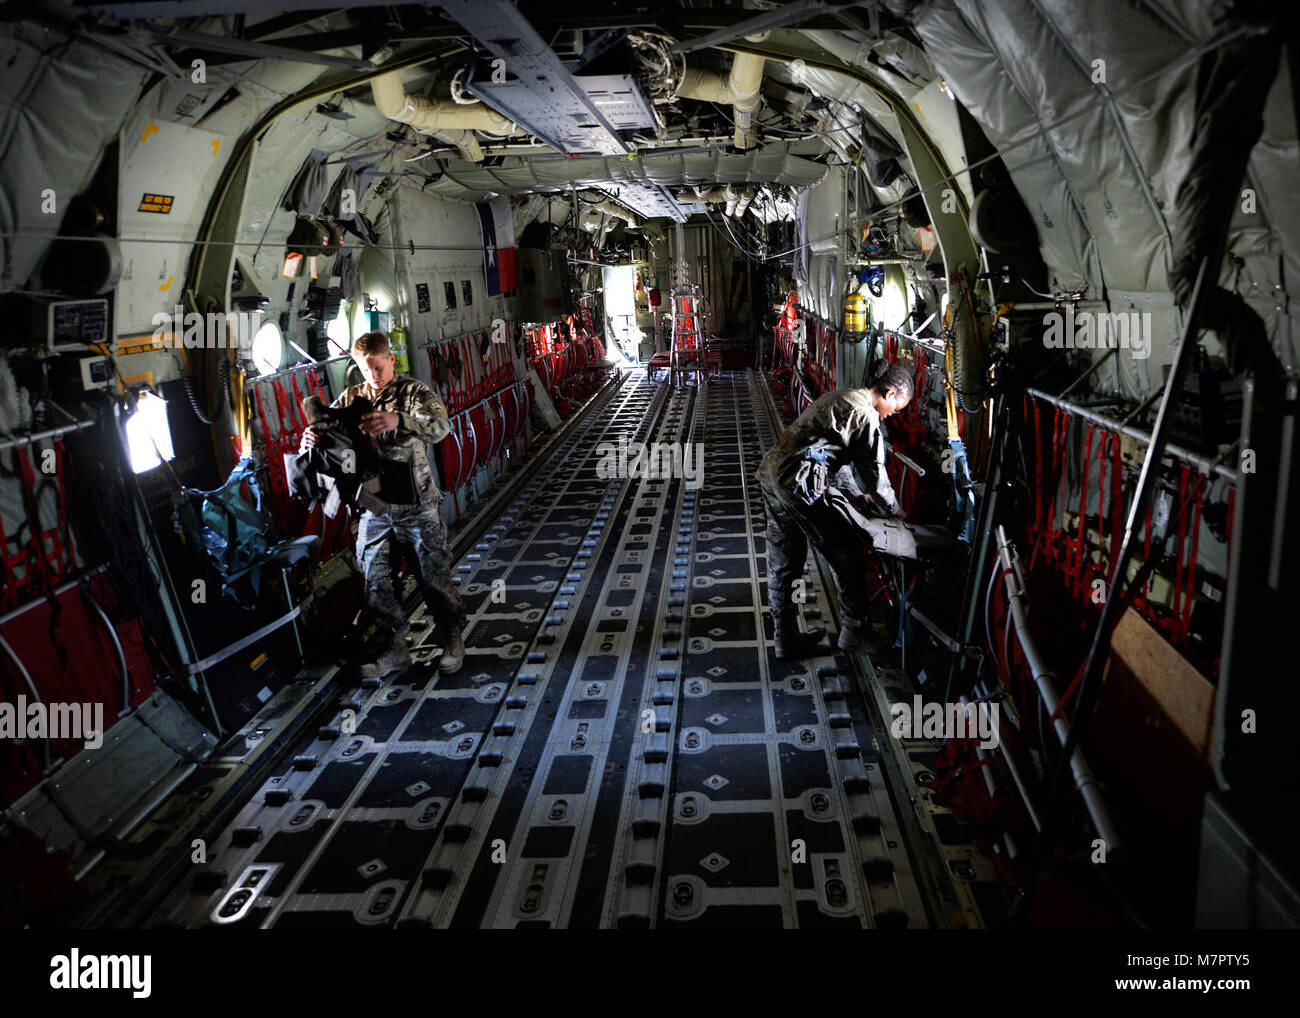 (Da sinistra) U.S. Air Force Senior Airman Ryan Jelstrom, 774th Airlift Expeditionary Squadron equipaggi di volo specialista di attrezzature e personale Sgt. Nancy Kendrick, equipaggi apparecchiature di volo non ufficiale incaricato di ispezionare carica equipaggio armatura per il corpo su un C-130J Super Hercules a Bagram Airfield, Afghanistan Giugno 18, 2014. Come parte degli equipaggi di apparecchiature di volo, essi sono responsabili di garantire gli equipaggi degli aeromobili attrezzature quali caschi, maschere ad ossigeno, paracaduti e occhiali per visione notturna sono riparabili per ogni missione. Jelstrom è distribuito da Dyess Air Force Base in Texas e un nativo di Cayucos, California Foto Stock